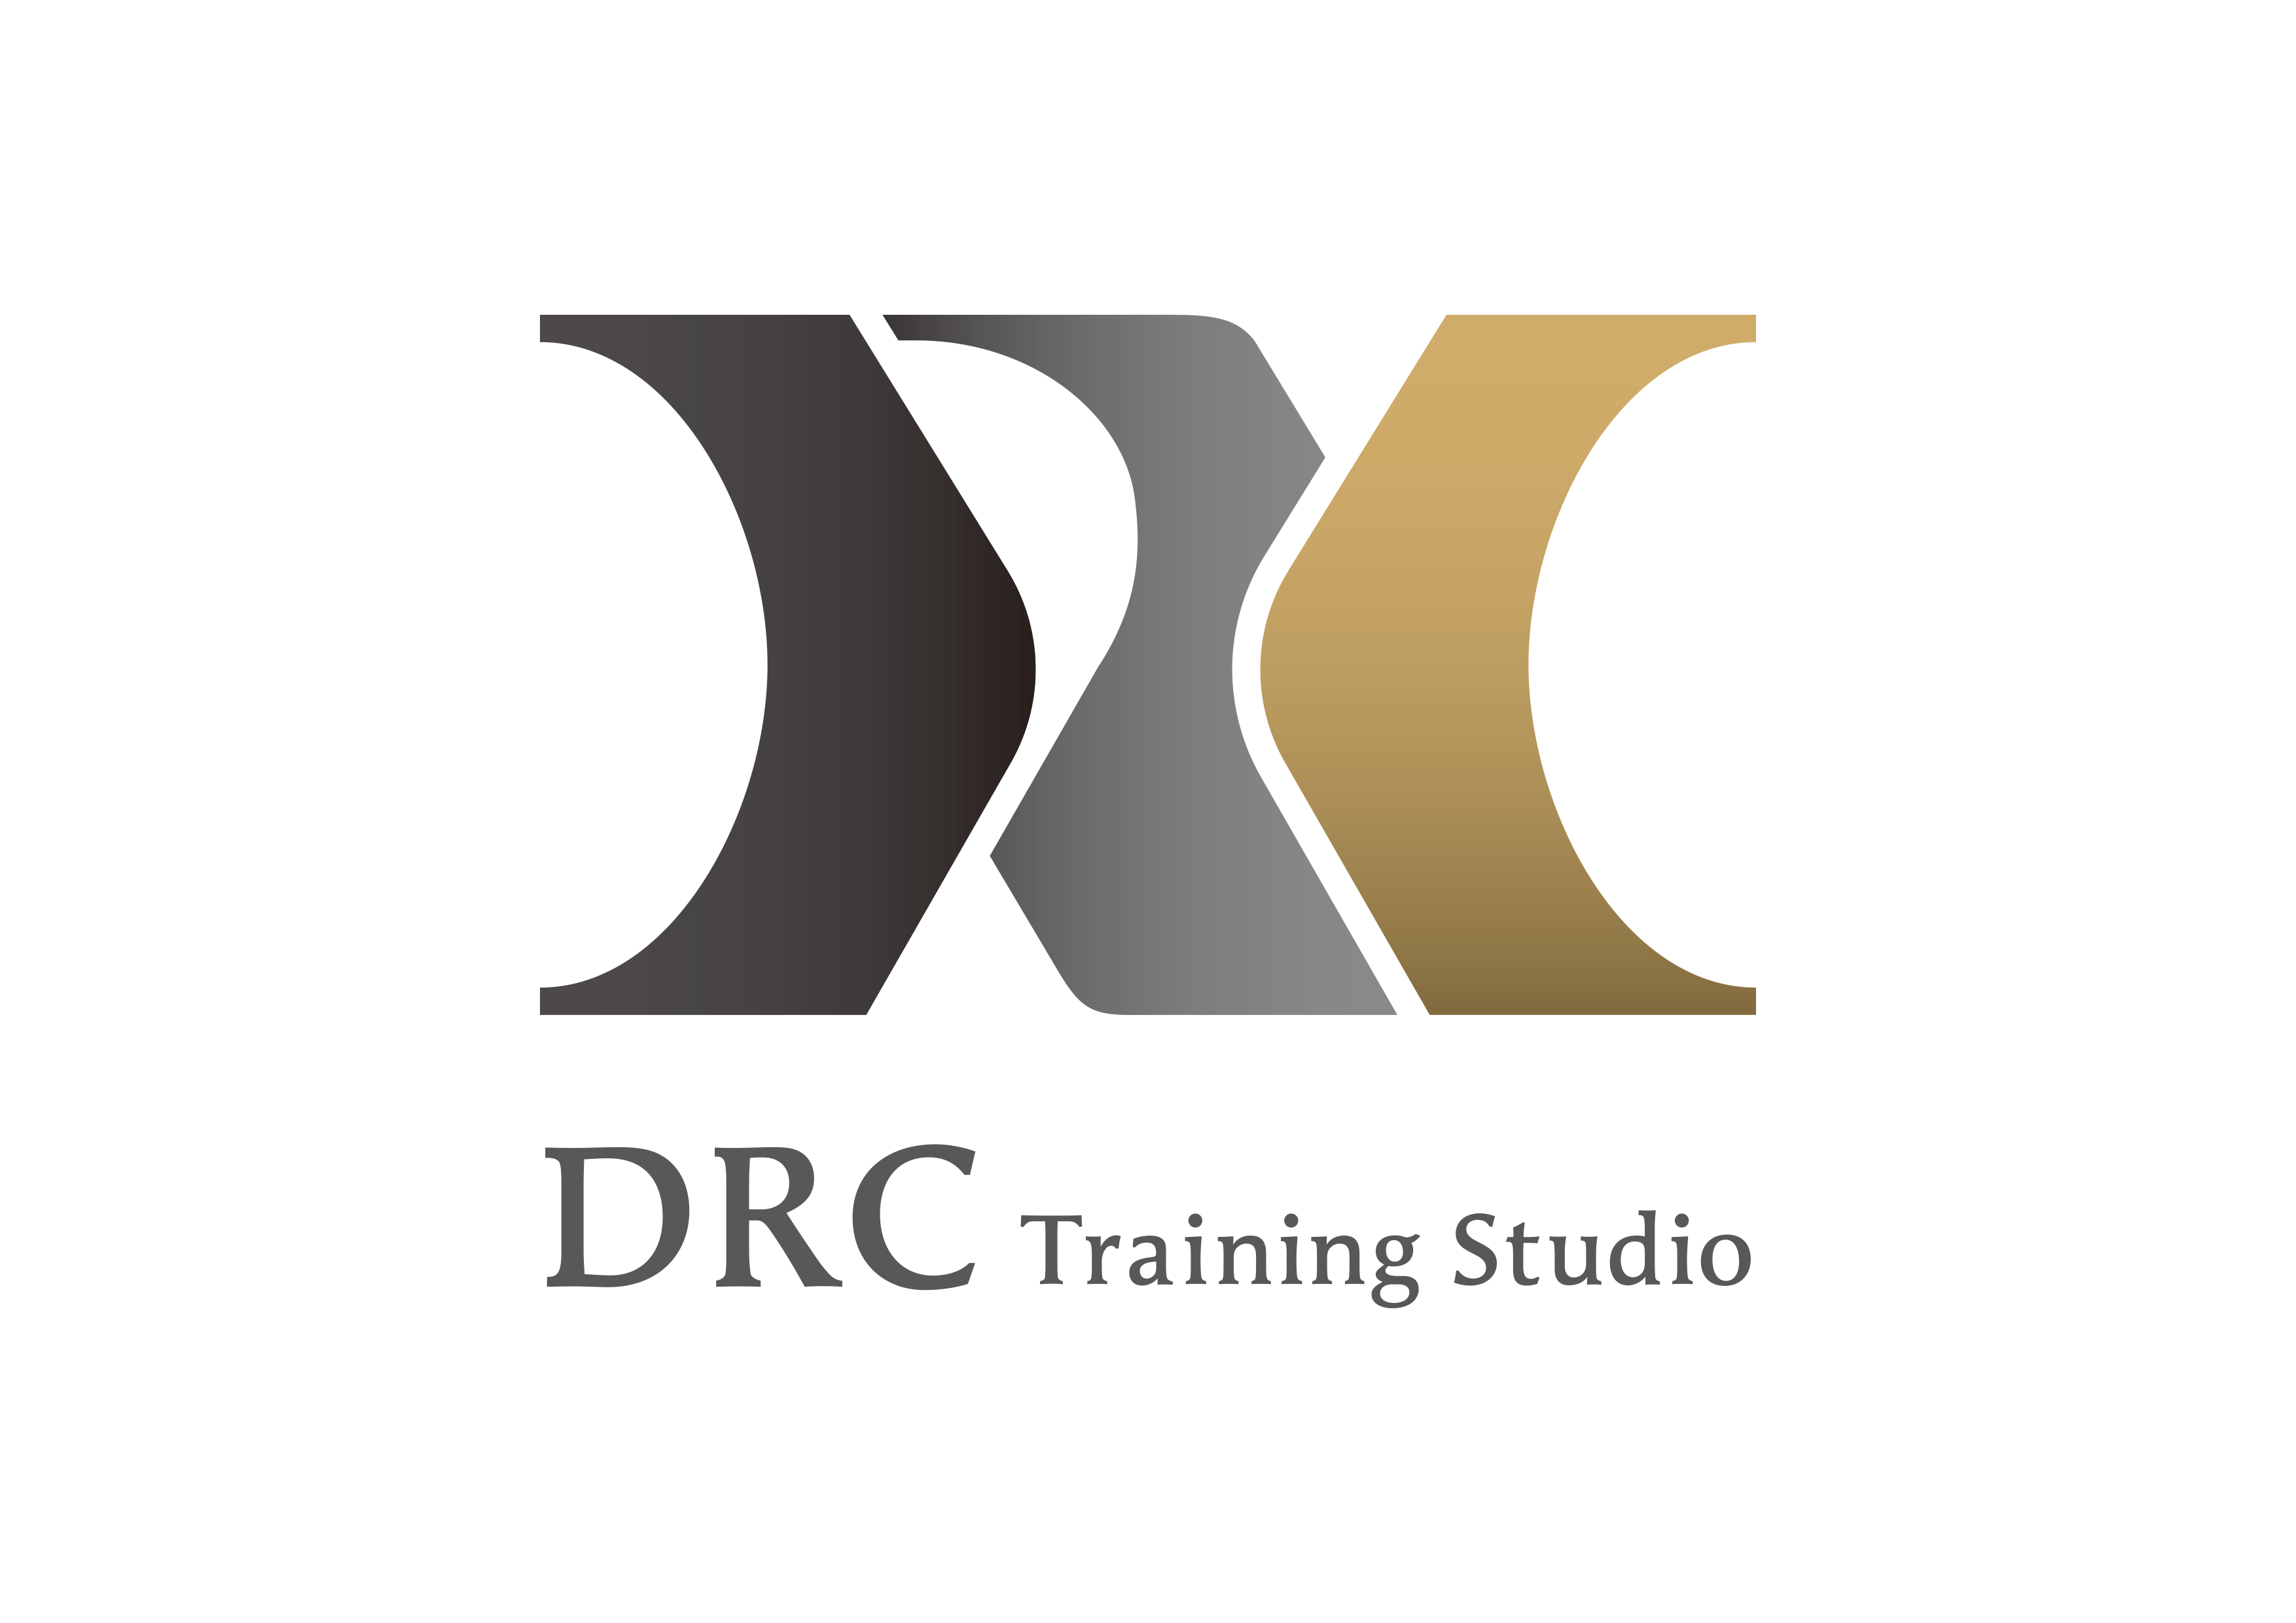 DRC Training Studio